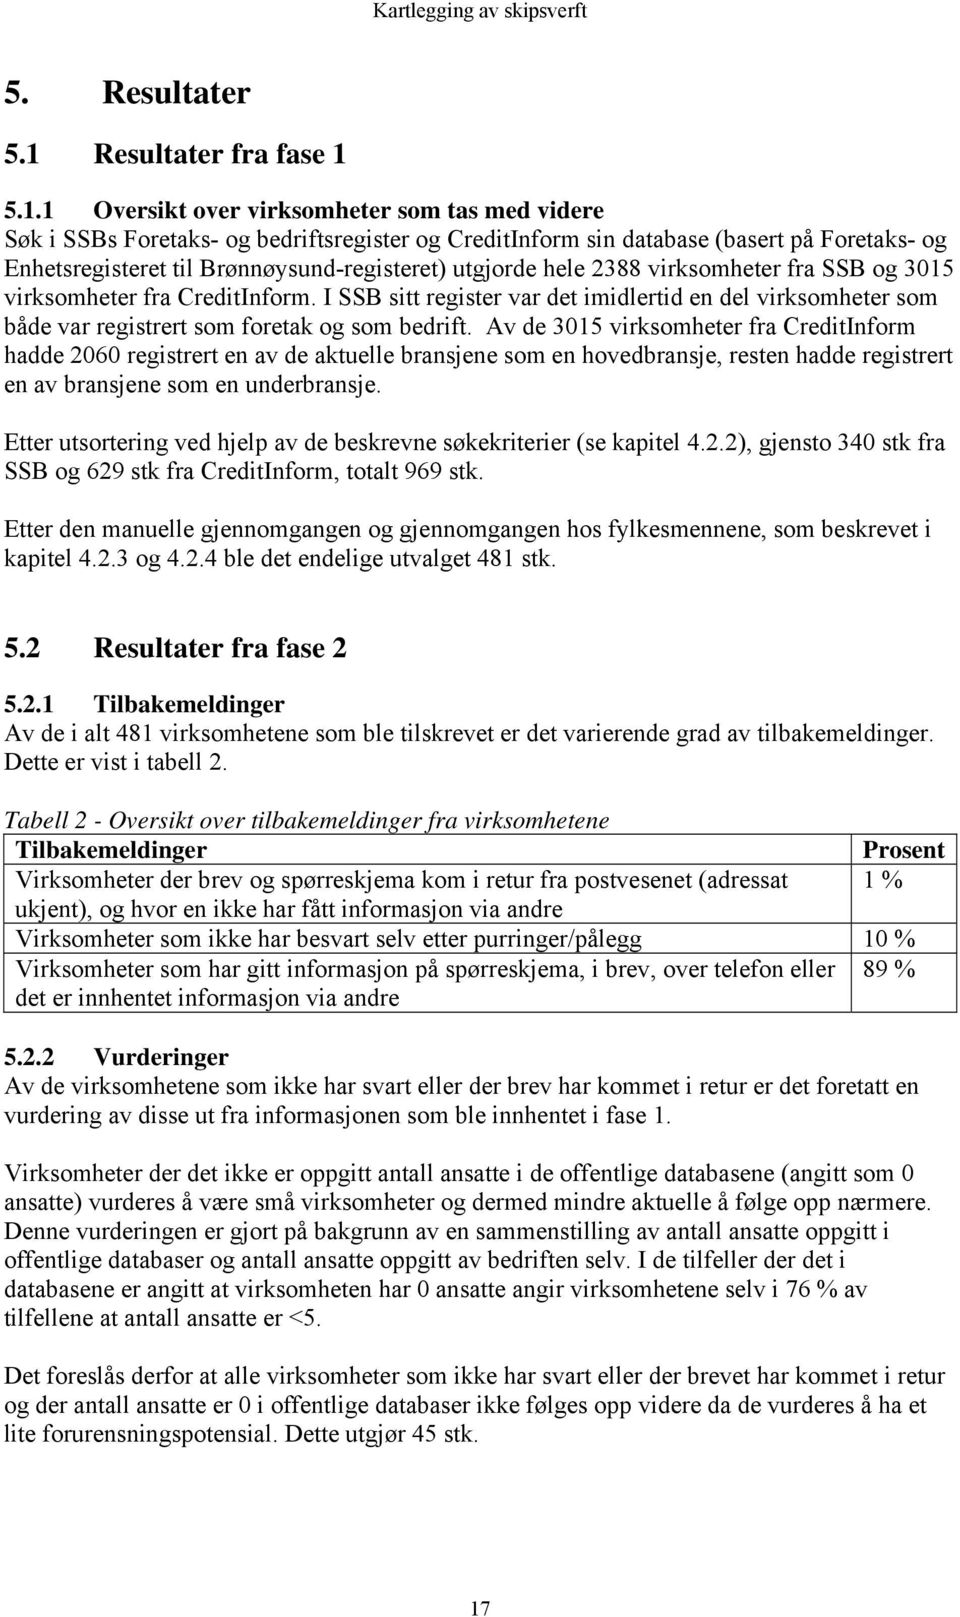 5.1.1 Oversikt over virksomheter som tas med videre Søk i SSBs Foretaks- og bedriftsregister og CreditInform sin database (basert på Foretaks- og Enhetsregisteret til Brønnøysund-registeret) utgjorde